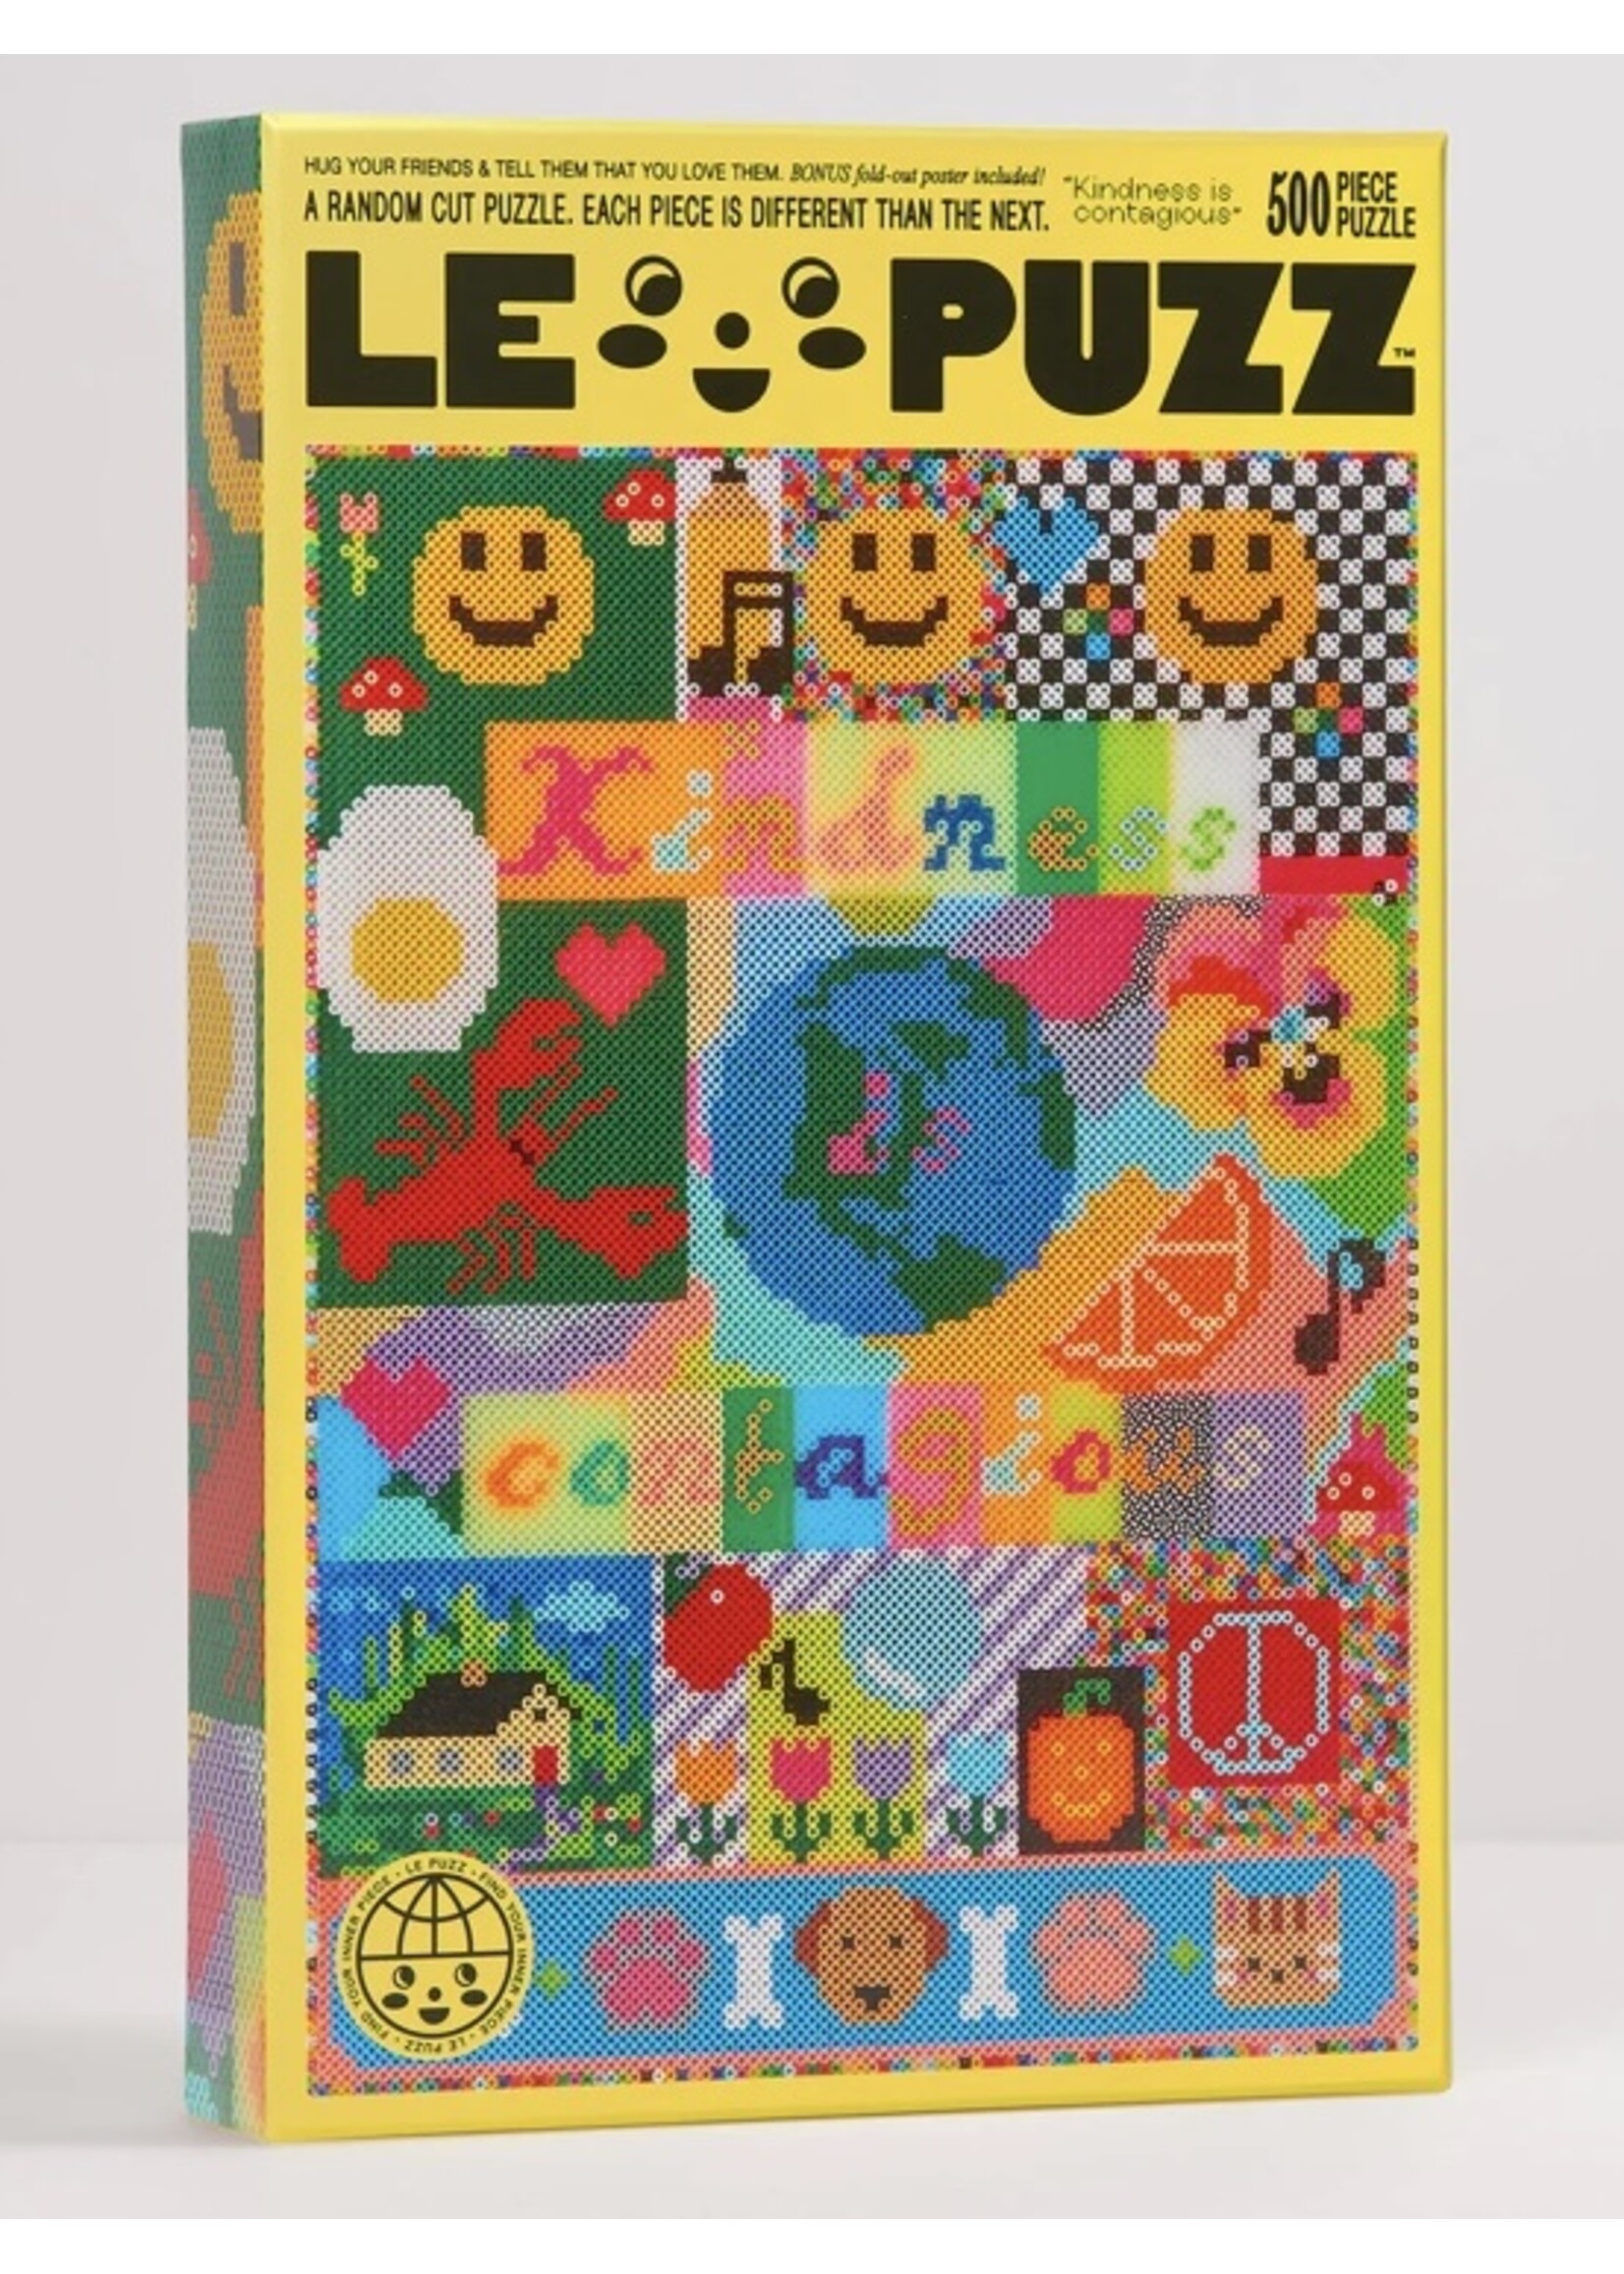 Le Puzz Puzzles "500 pieces" by LE PUZZ